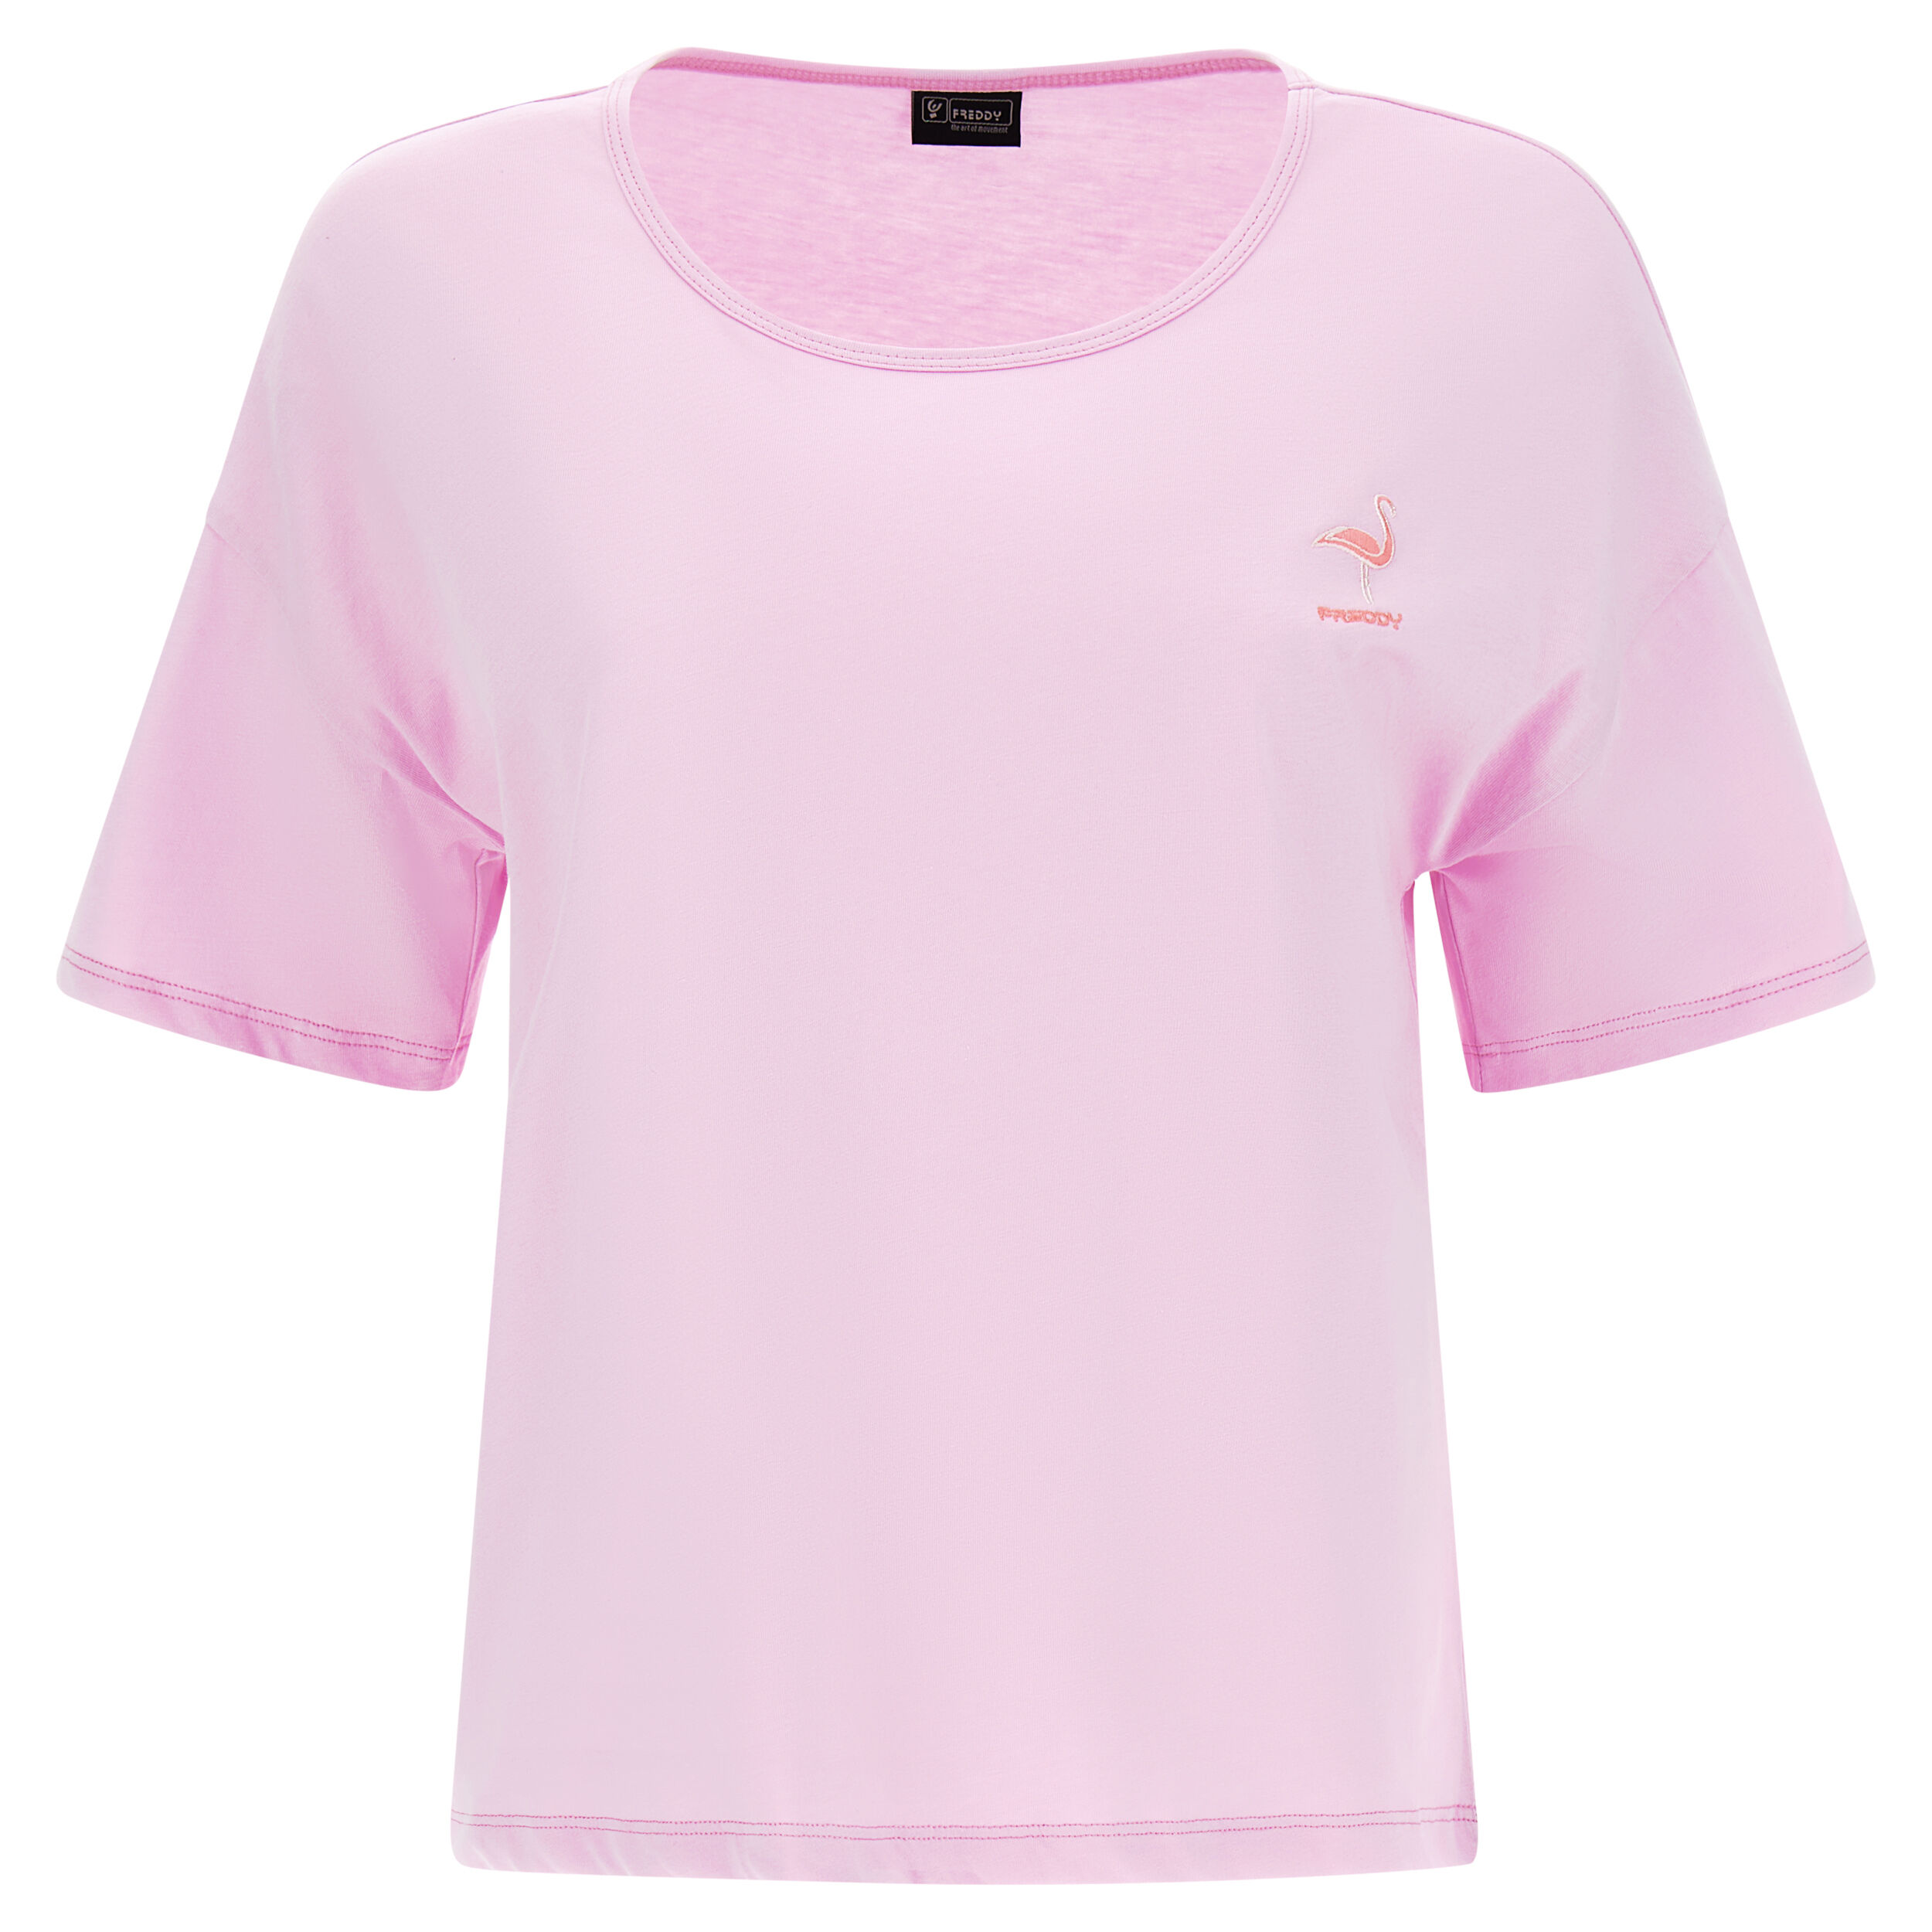 Freddy T-shirt in jersey leggero con patch fenicottero in tono Pink Lavender Donna Small